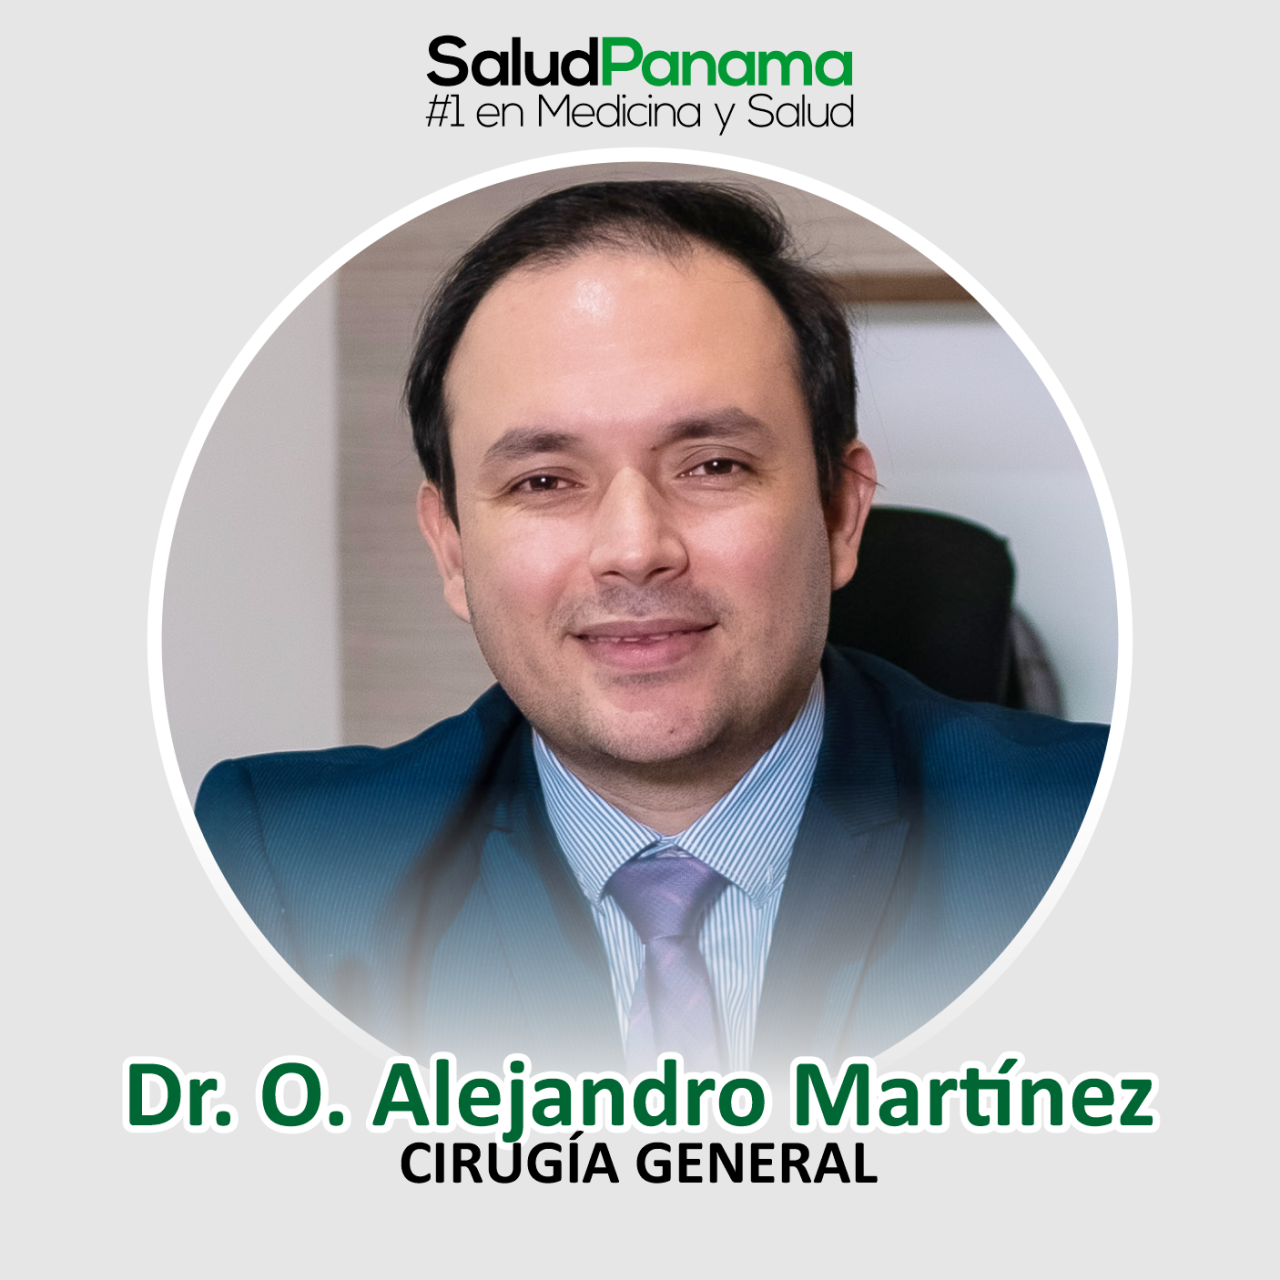 Dr. O. Alejandro Martínez